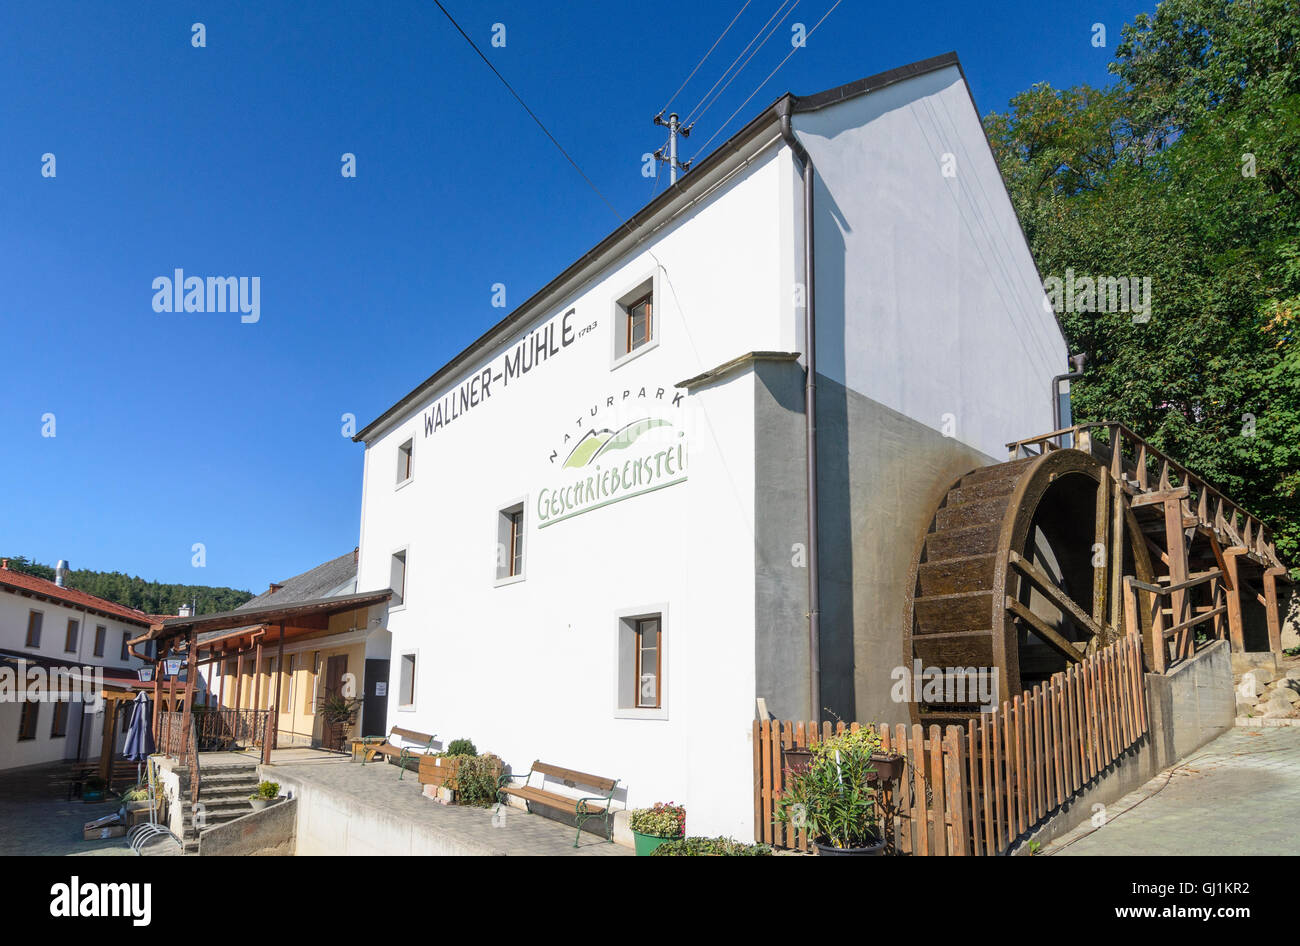 Markt Neuhodis: Wallner Mill in Nature Park Geschriebenstein, Austria, Burgenland, Stock Photo